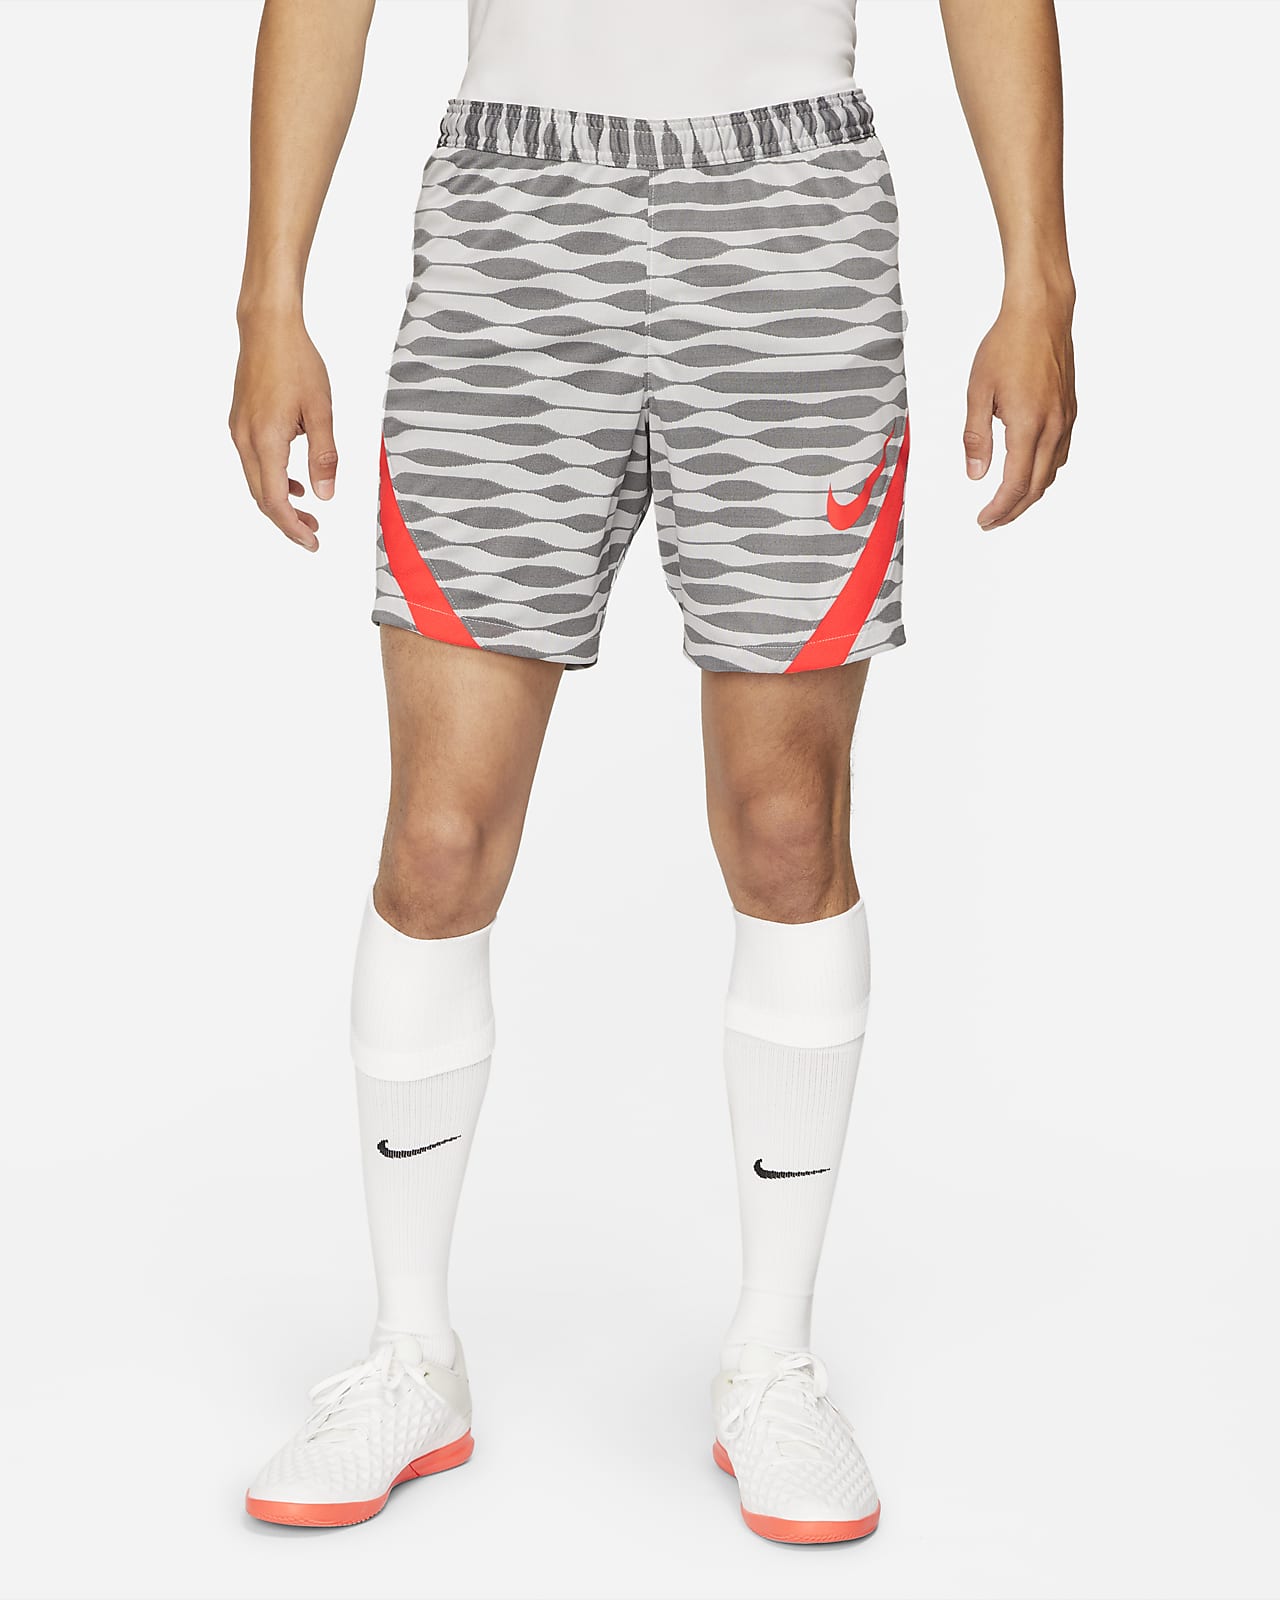 men's nike white soccer shorts